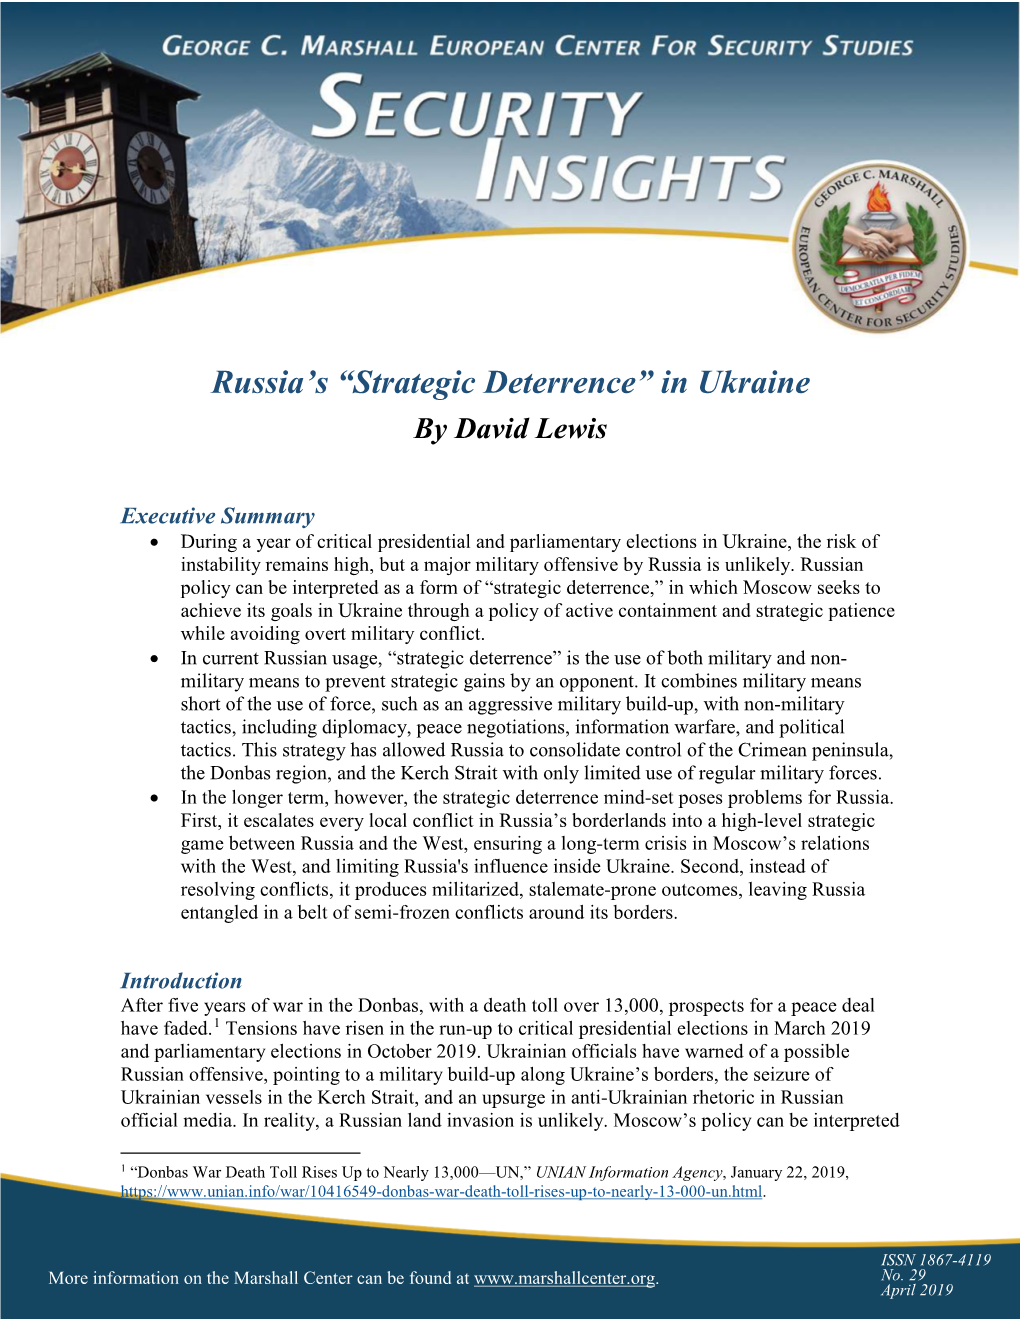 Strategic Deterrence” in Ukraine by David Lewis